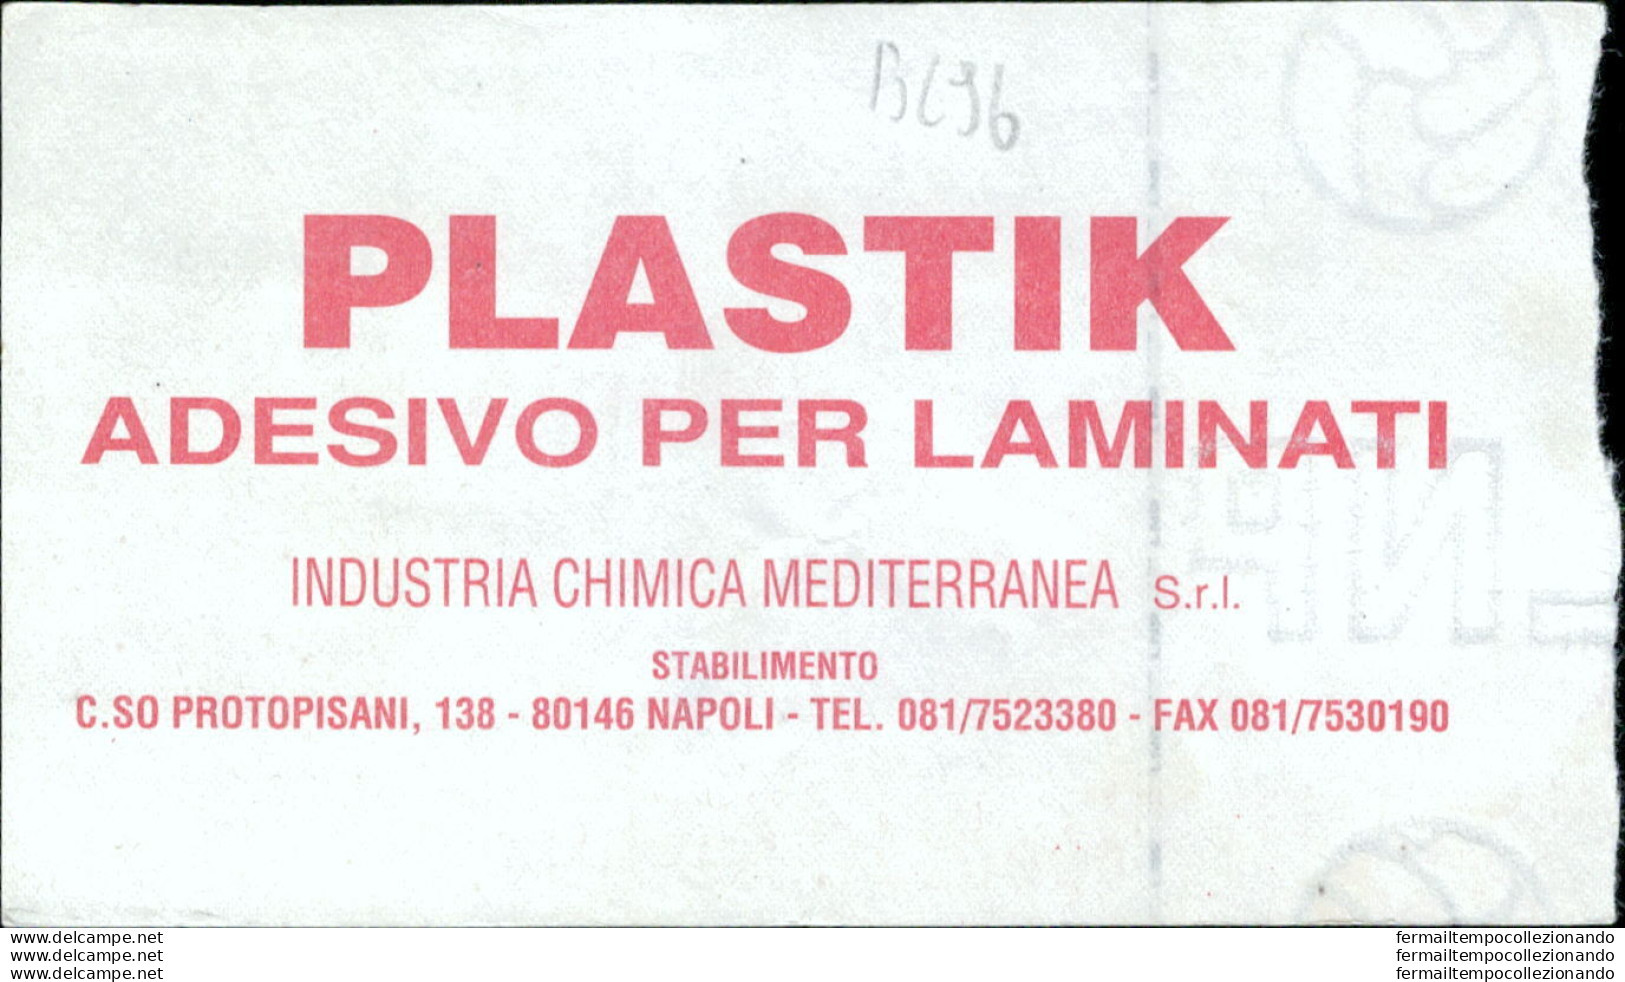 Bl96  Biglietto Calcio Ticket Juve Stabia -ostia 1993-1994 - Eintrittskarten